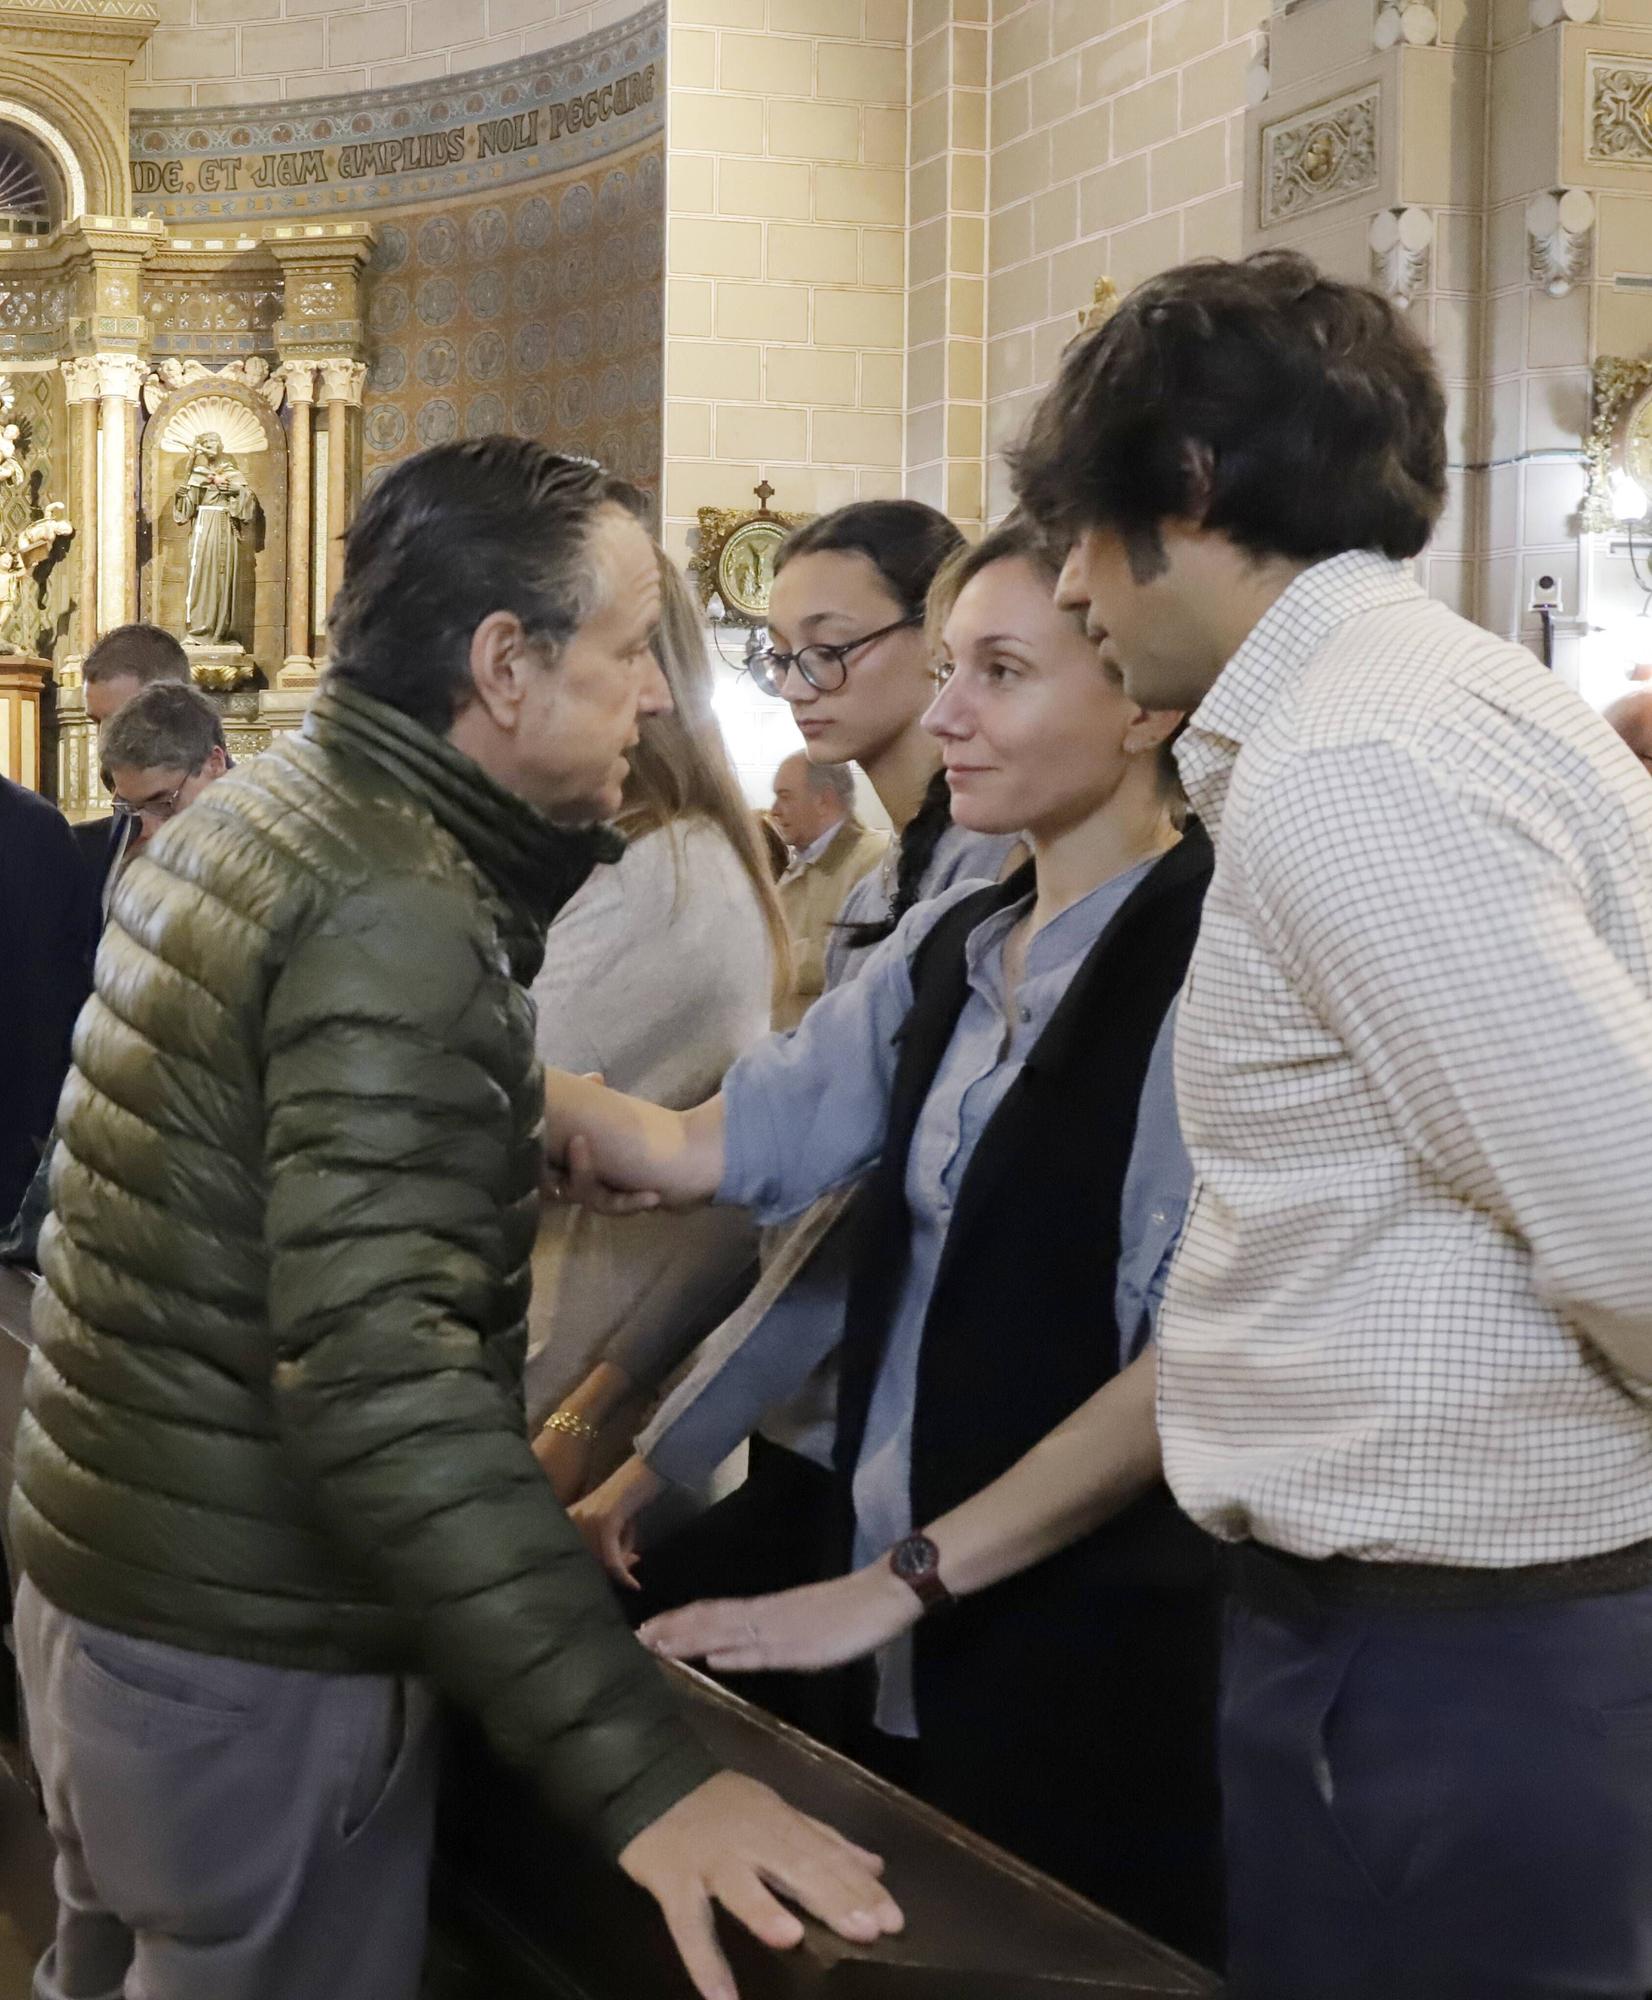 Sentida despedida a Anselmo López Acha, recibido en la iglesia con el himno del Oviedo
